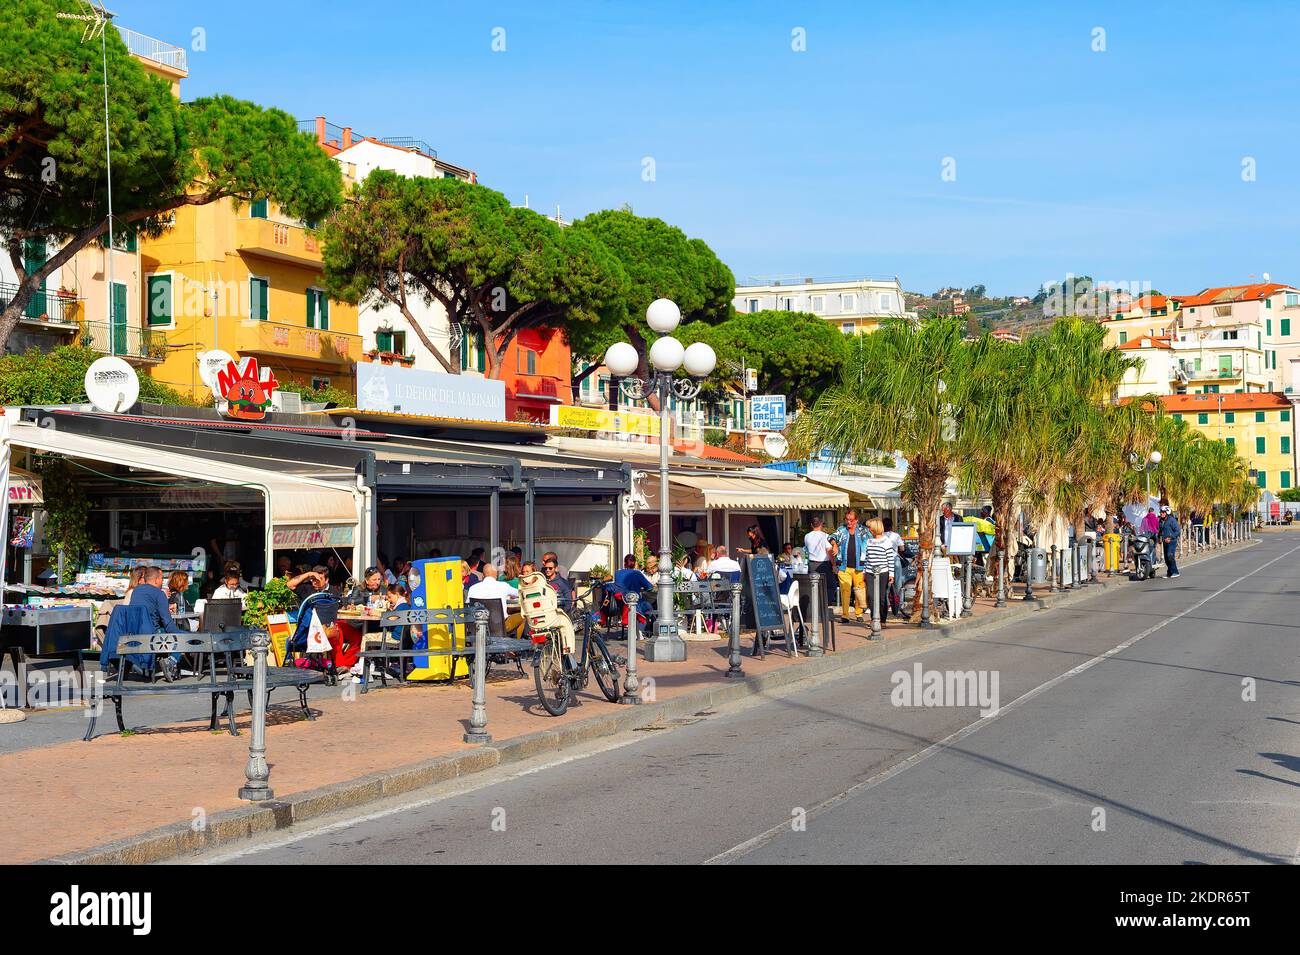 SANREMO, ITALIA - 28 OTTOBRE 2021: Persone che mangiano in ristoranti terrazze di strada in pieno sole, paesaggio urbano con alberi verdi Foto Stock